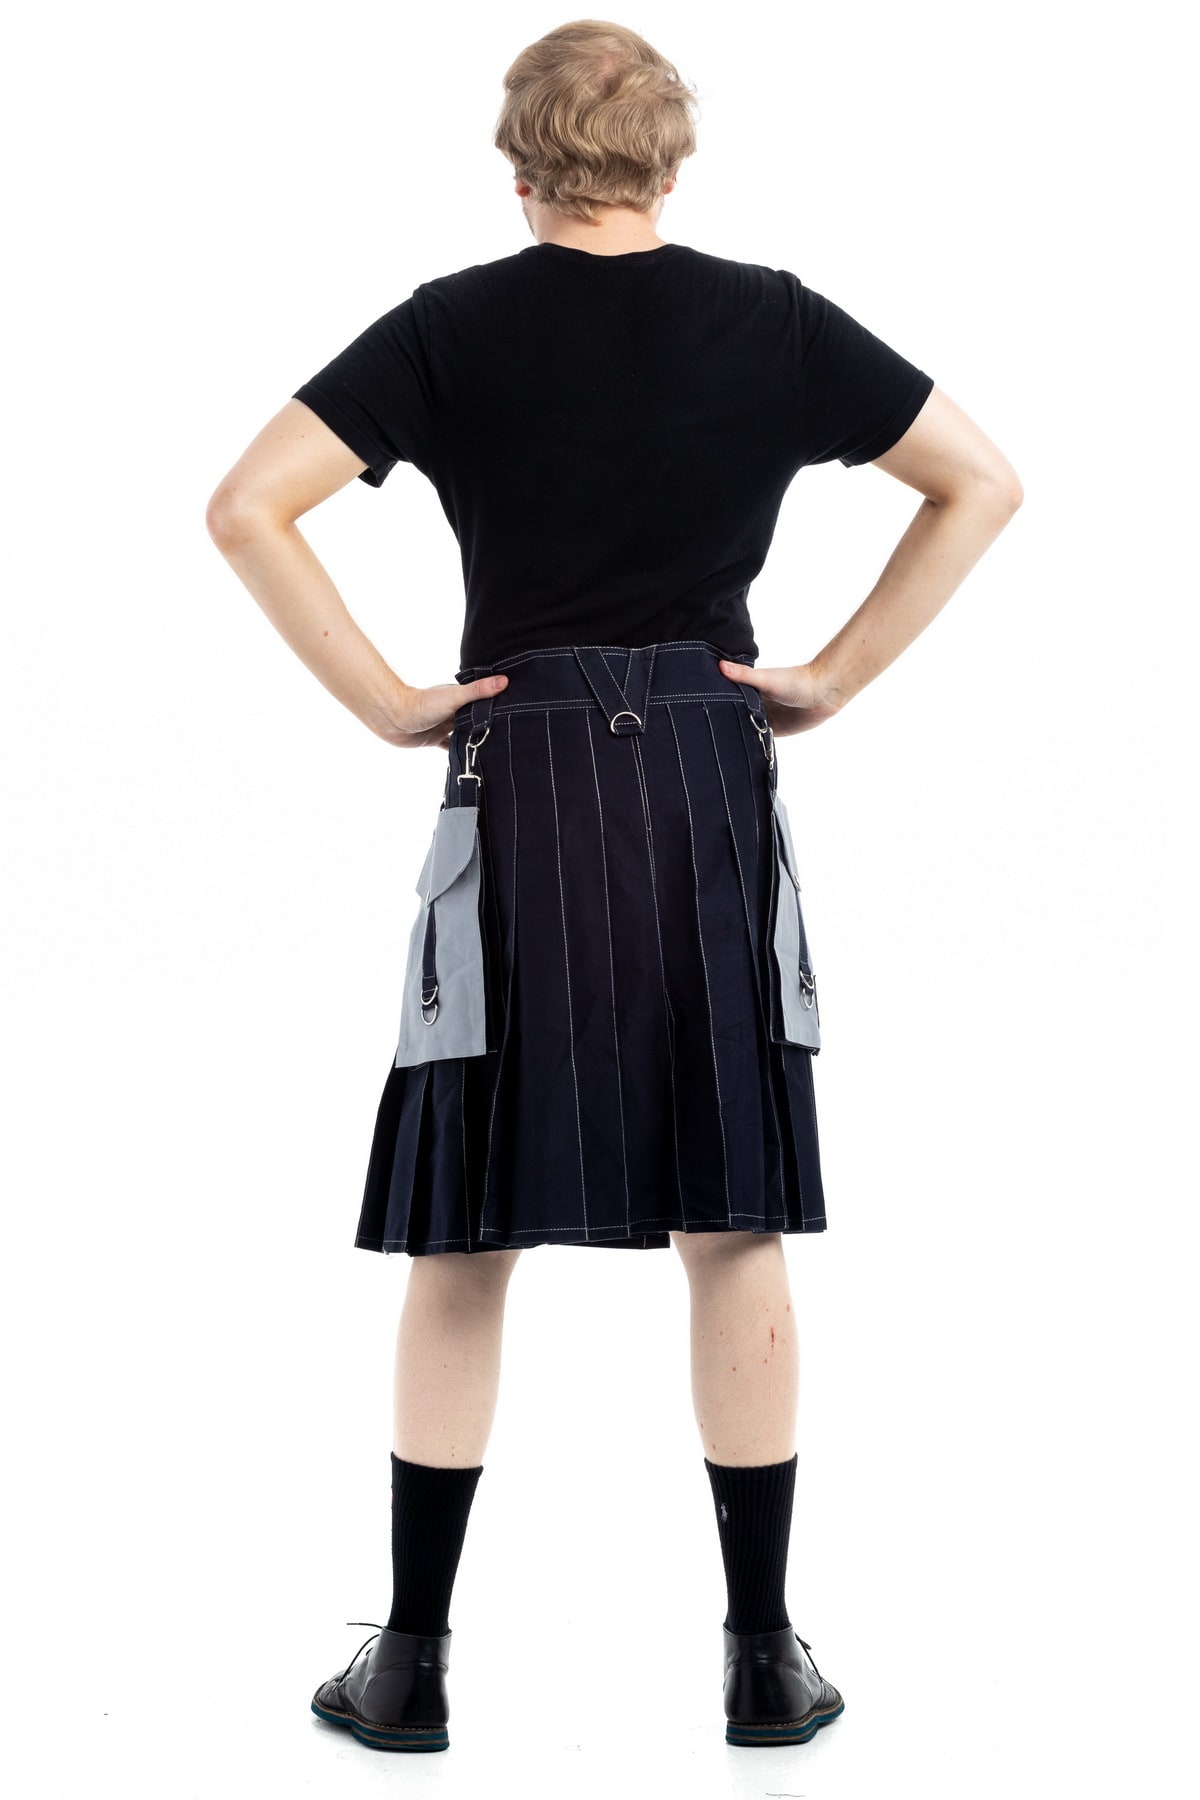 Contrast Pocket Modern Kilt For Royal Men-back